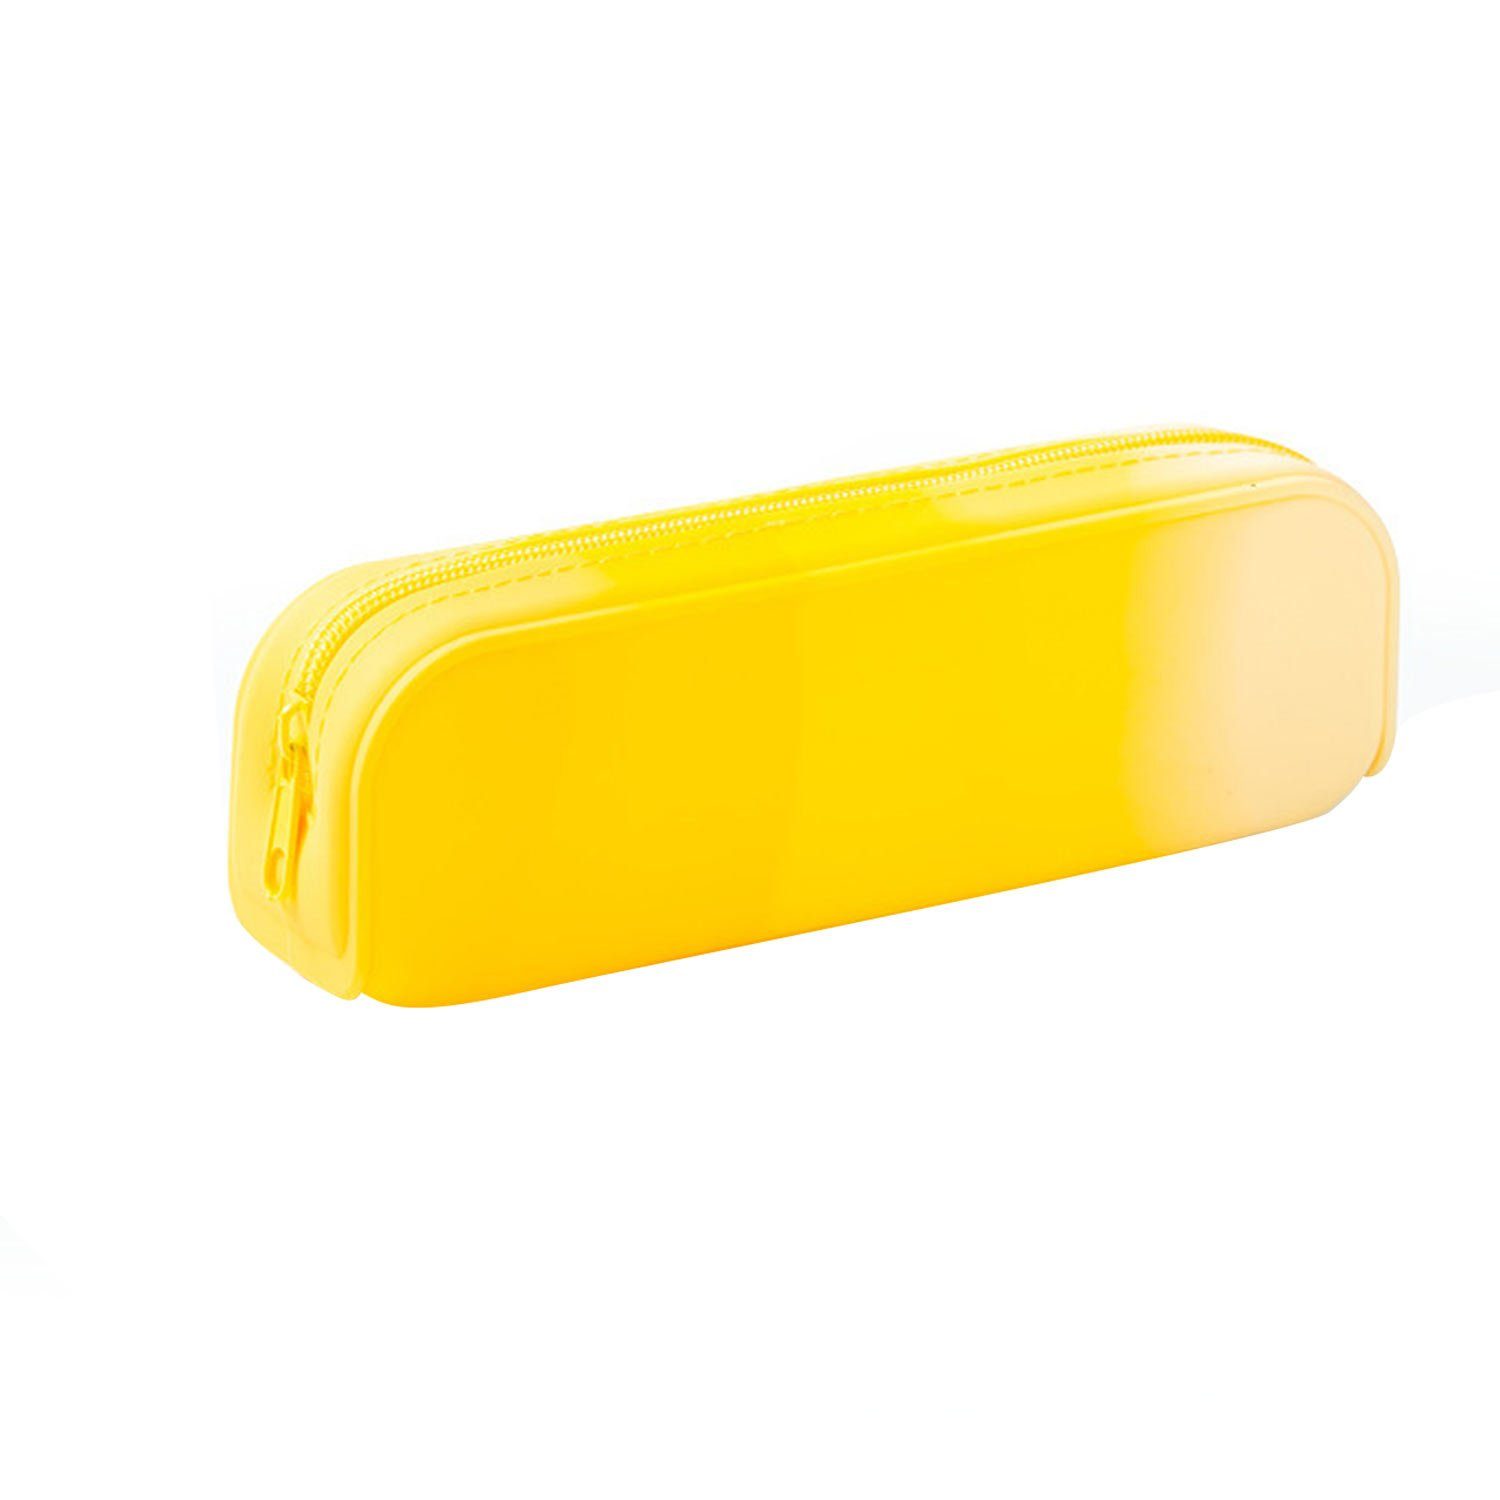 MAGICSHE Federmäppchen Hochwertige Silikontextur, Stifttasche mit praktischem Reißverschluss gelb